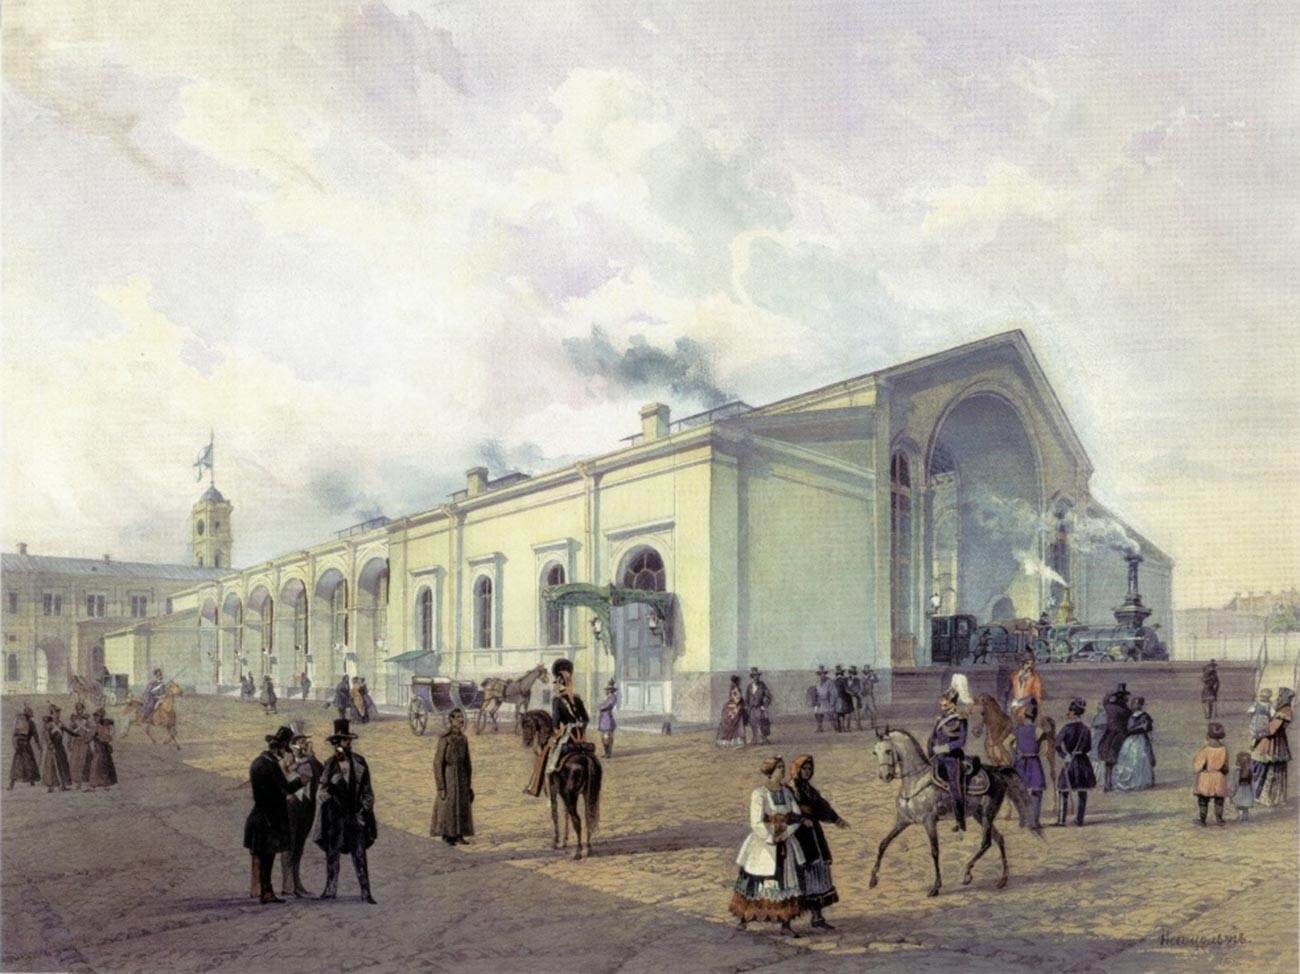 Aquarell von August Petzolt. Es stellt den Entlader des St. Petersburger Nikolajewski-Bahnhofs der Peterburgo-Moskau-Eisenbahn dar.